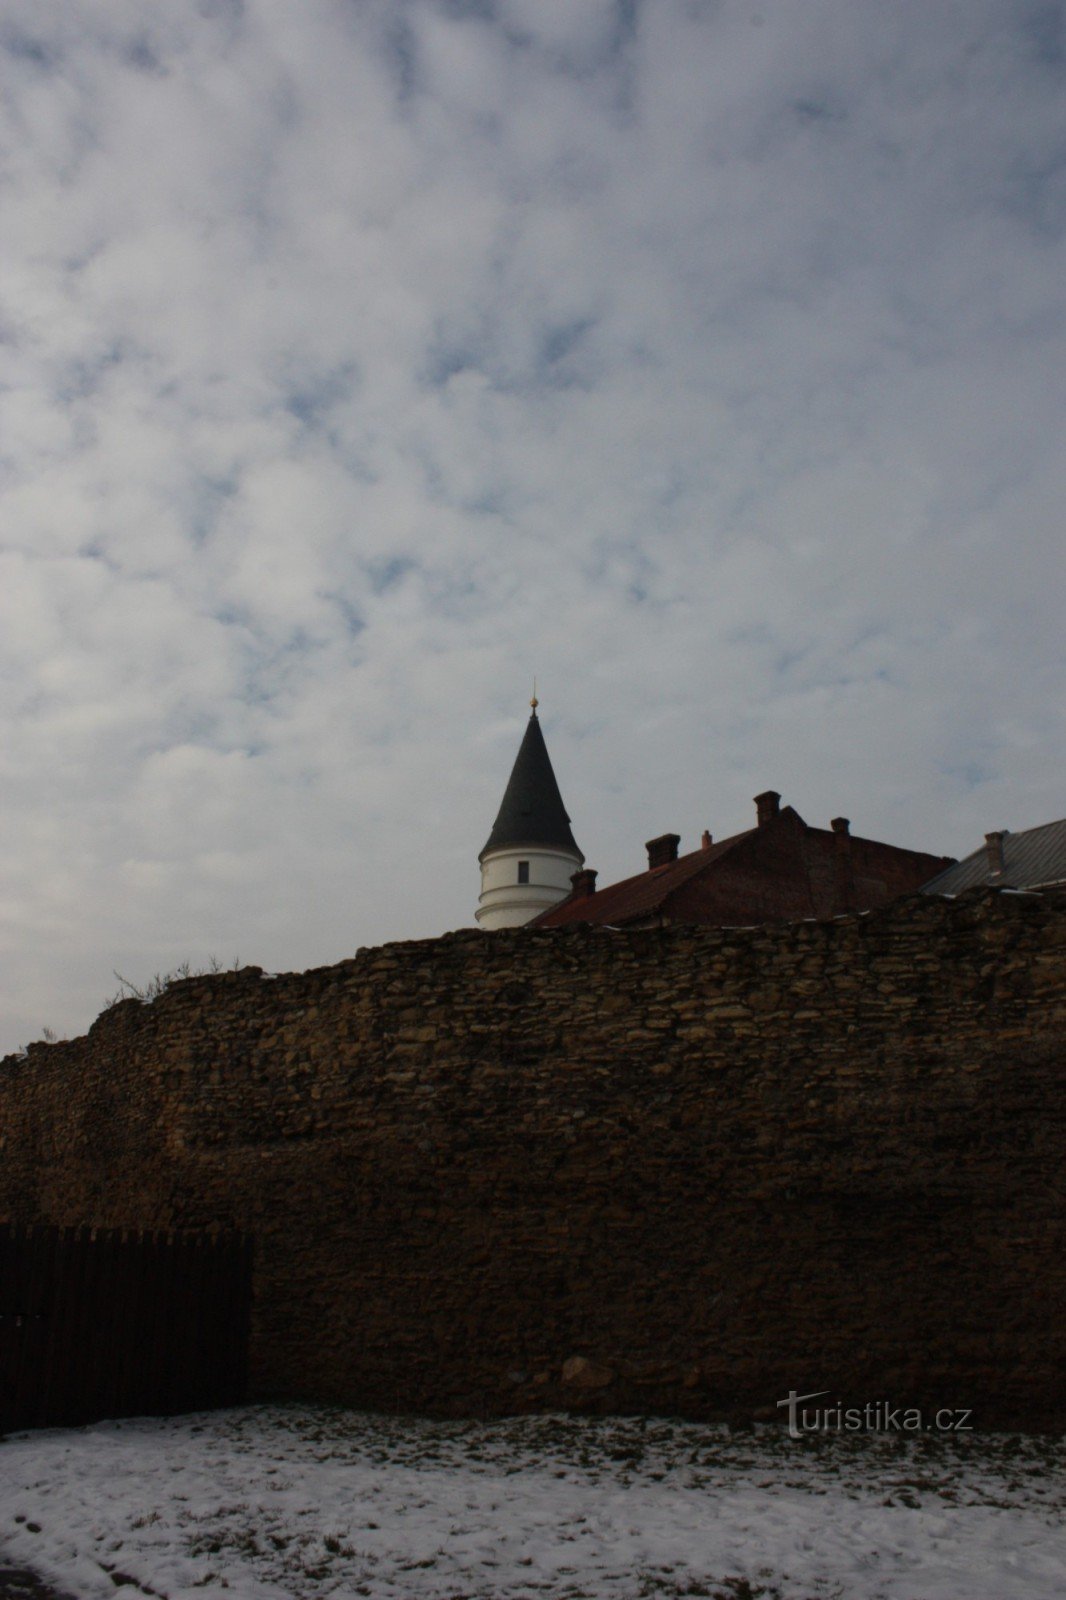 Ostanki utrdbenega sistema iz 15. stoletja v Přerovu